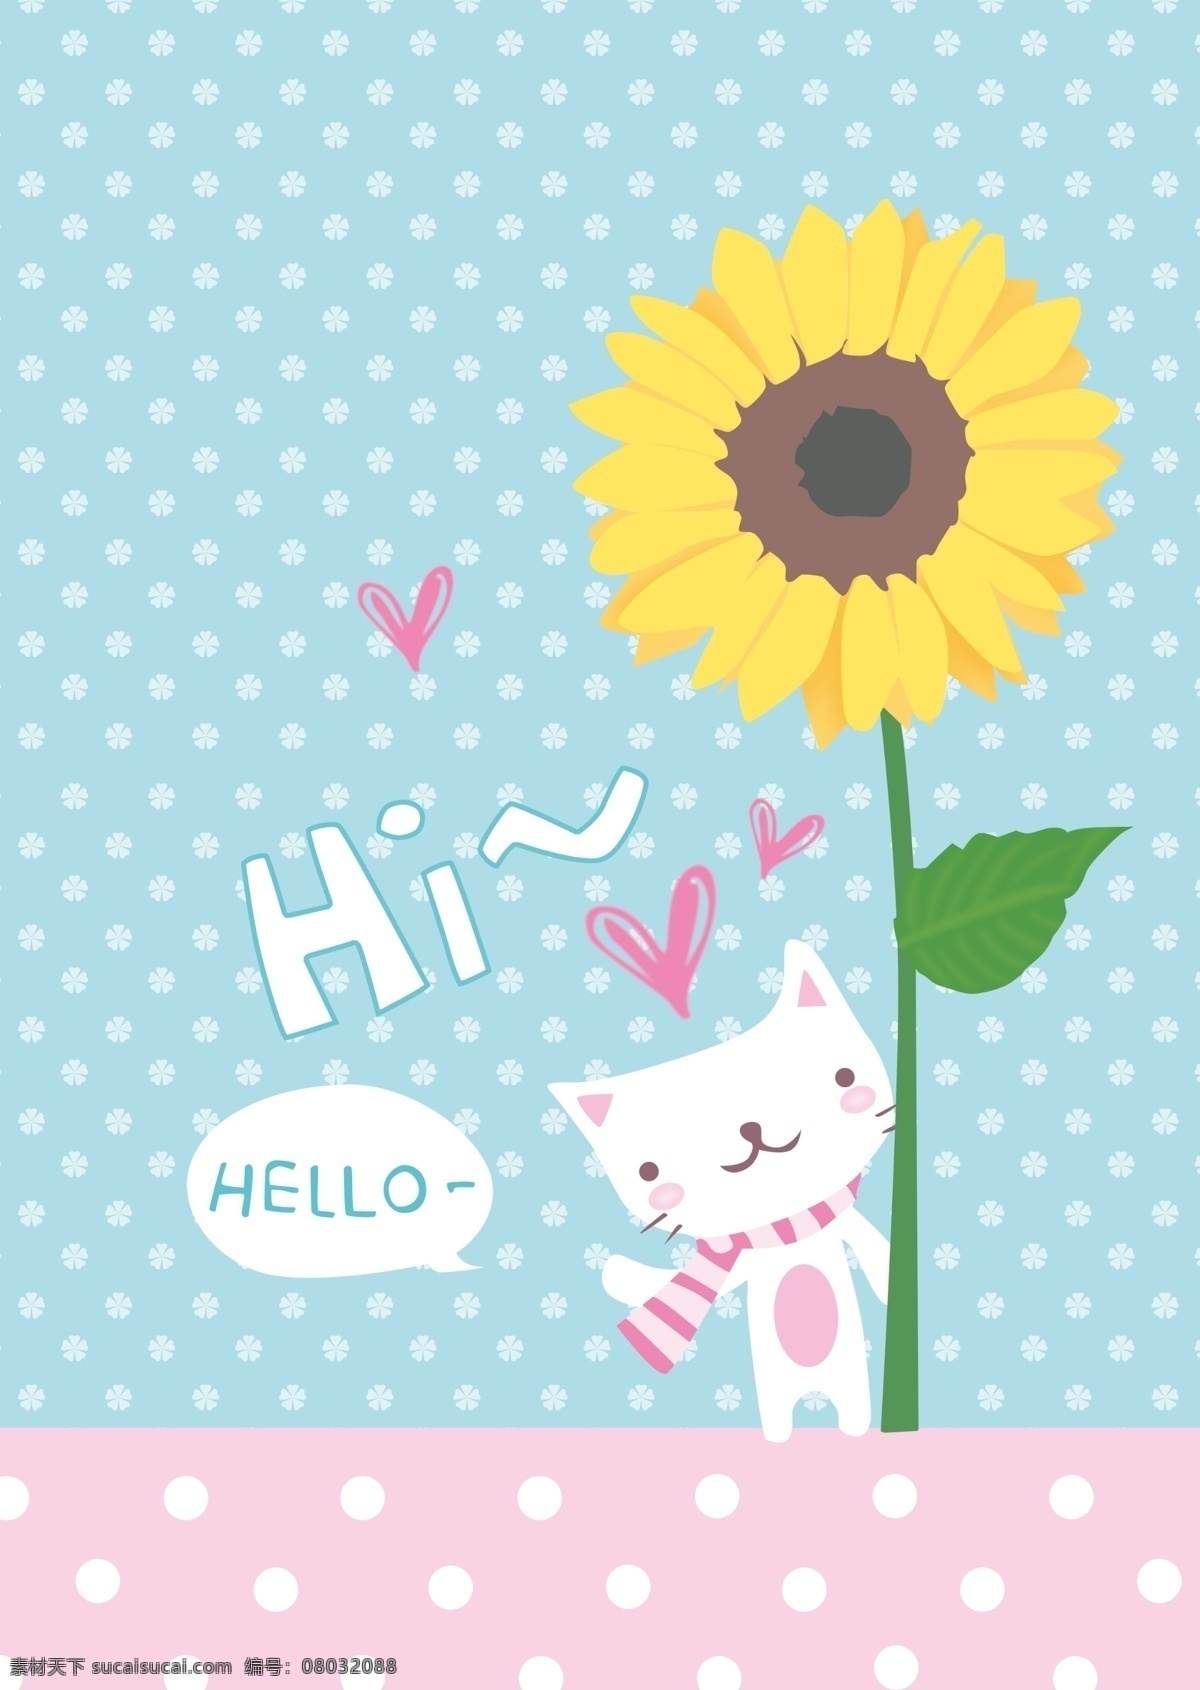 韩国卡通 分层手绘 动物 可爱 情人节 时尚素材 小标贴 小猫 印花 向日葵 韩日动漫 桃心卡通背景 韩国儿童